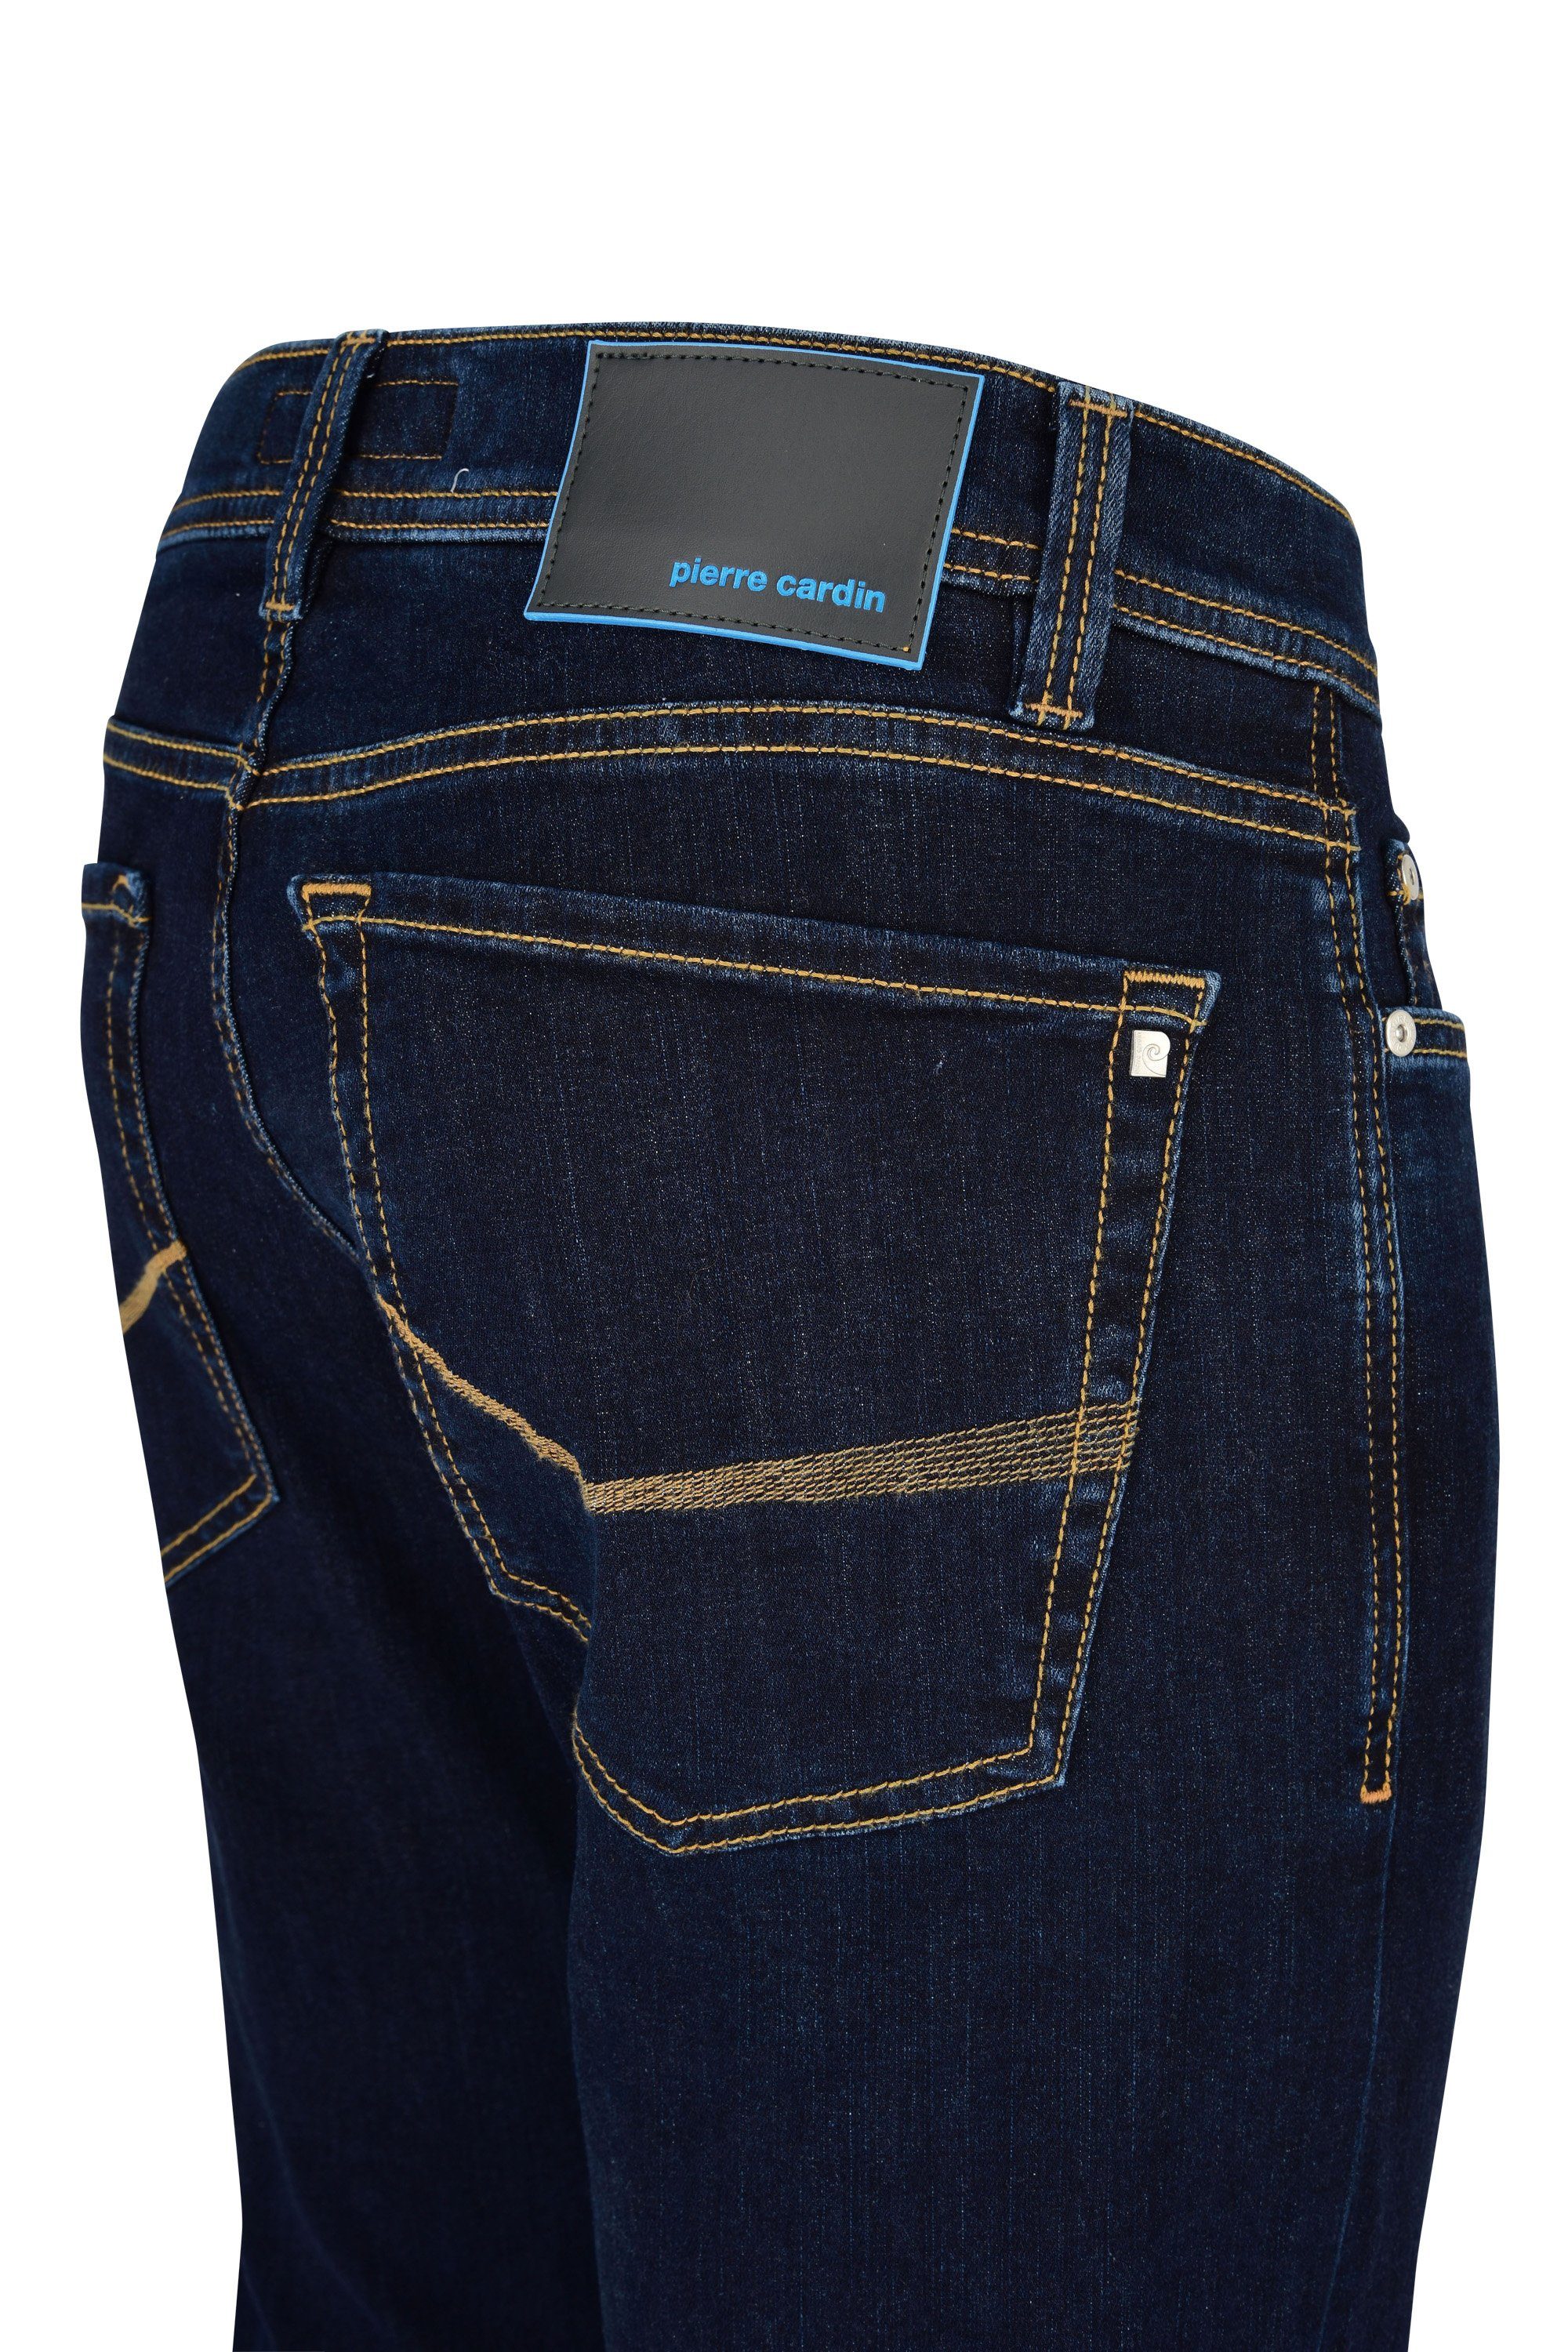 Pierre Cardin 5-Pocket-Jeans PIERRE CARDIN dark LYON 8880.89 blue FUTUREFLEX 3451